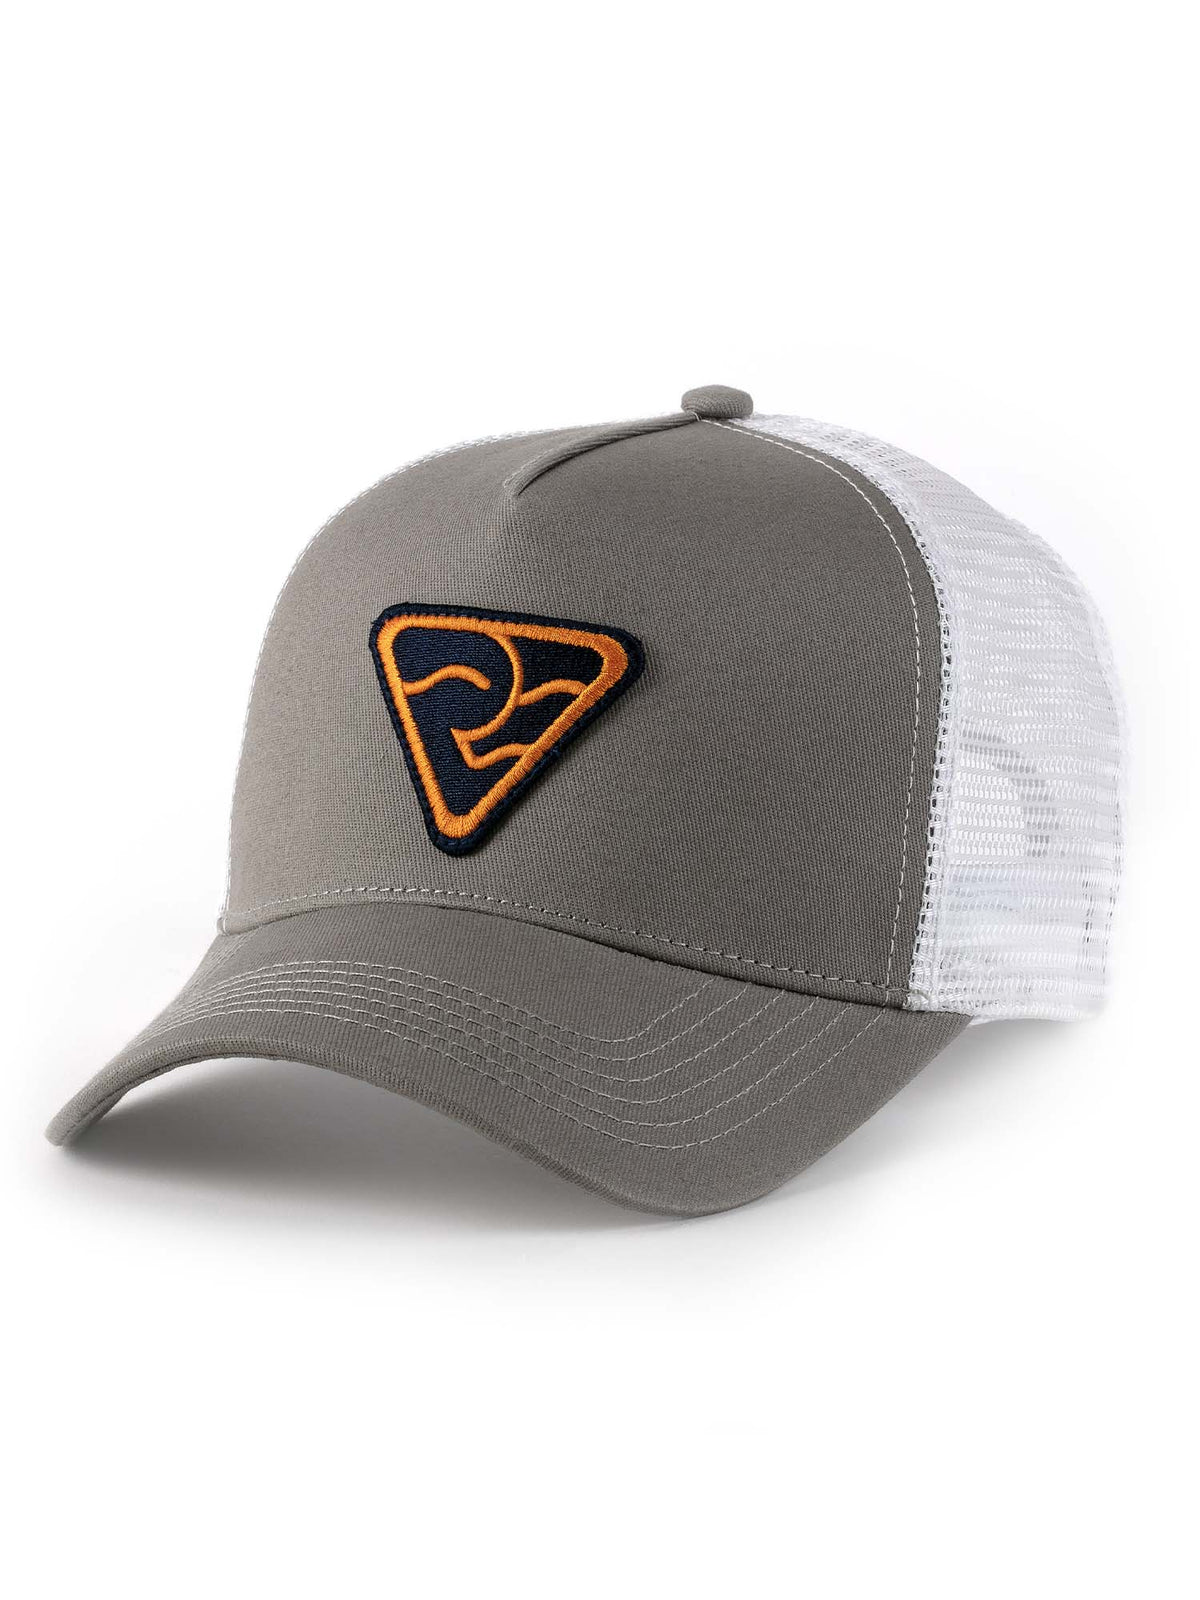 Trucker Hat - Beacon - RogueEndeavor